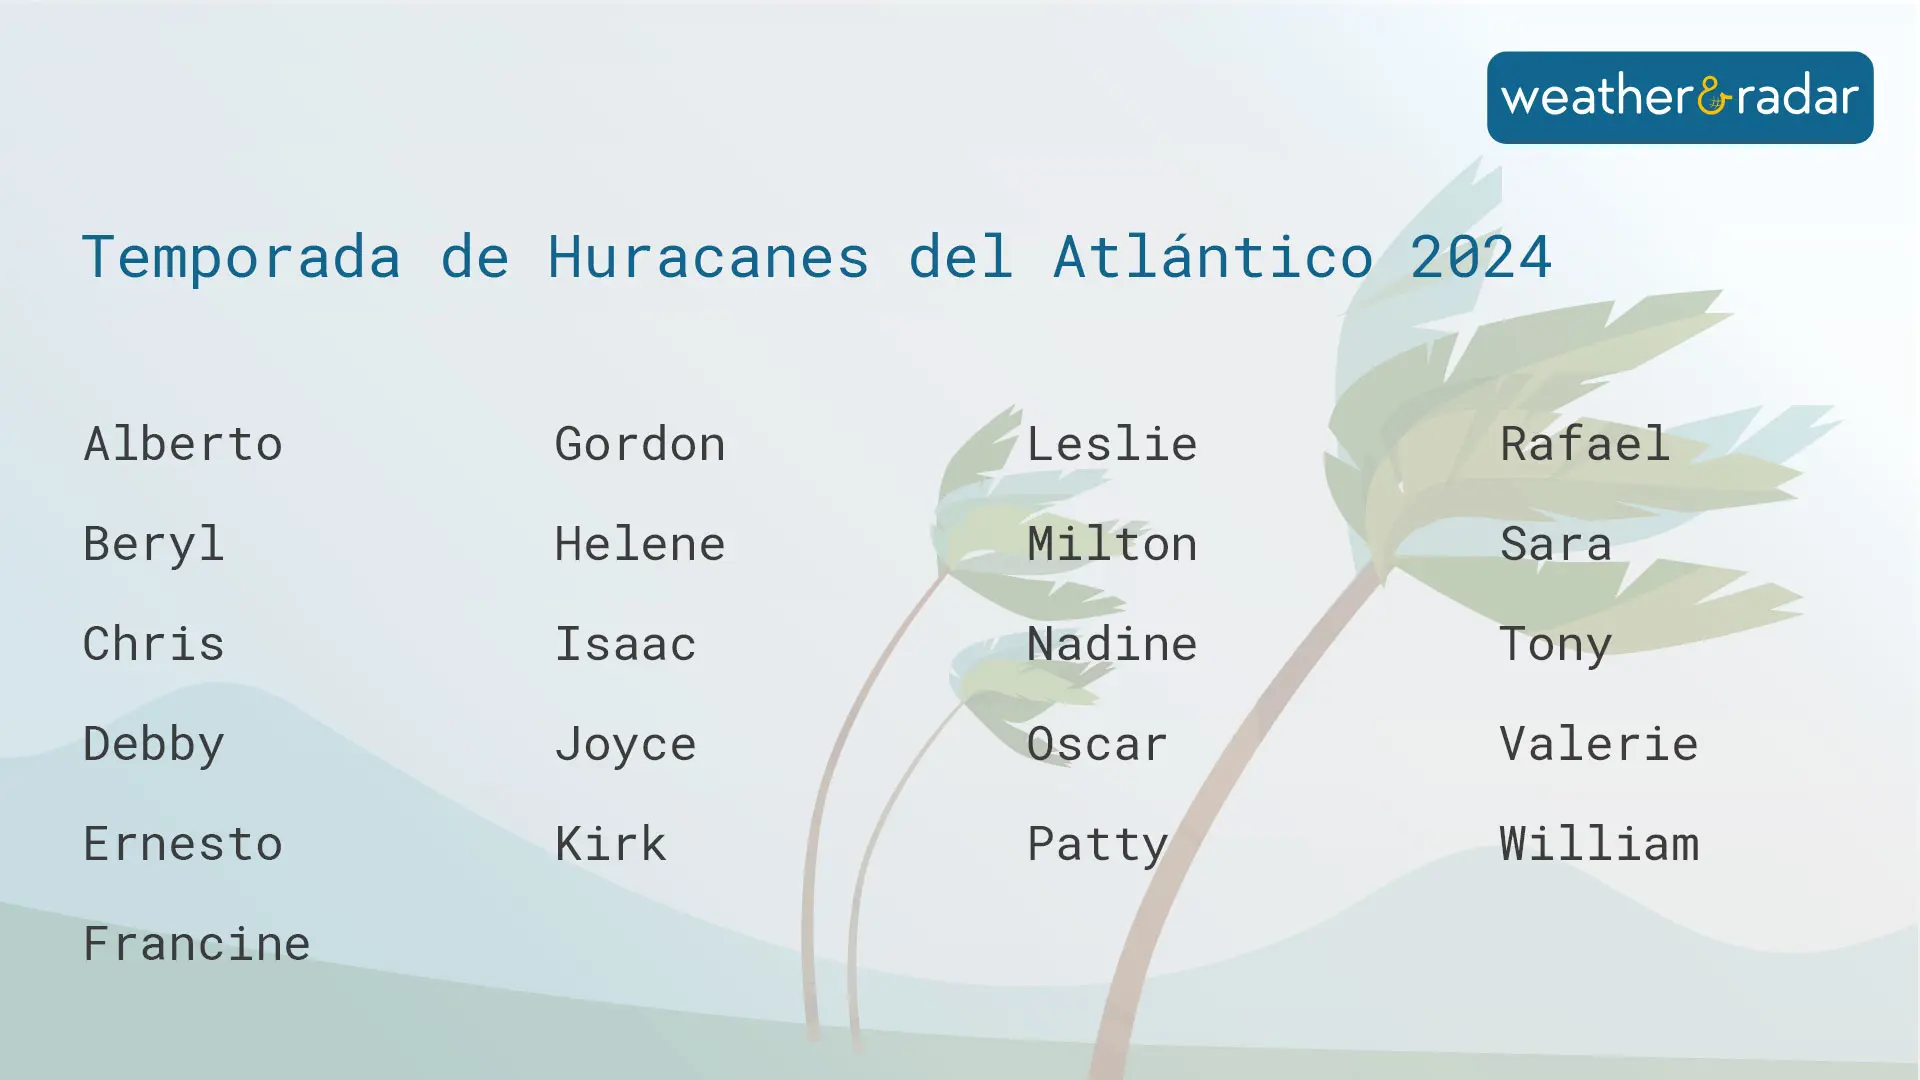 Nombres de la temporada de huracanes del Atlántico de 2024